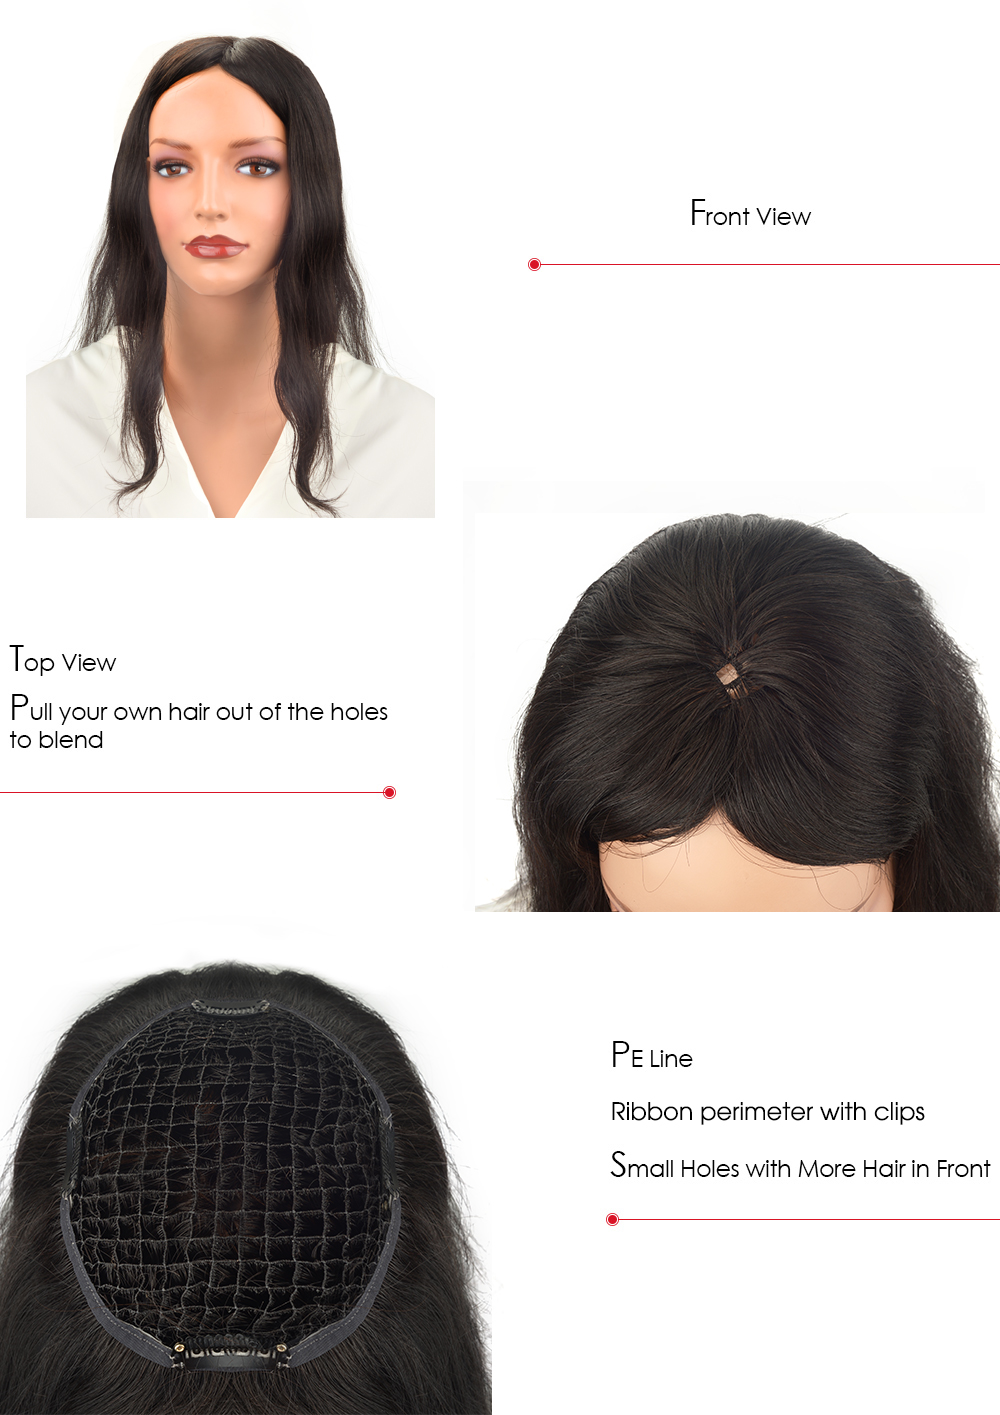 intergration hair syatem for women